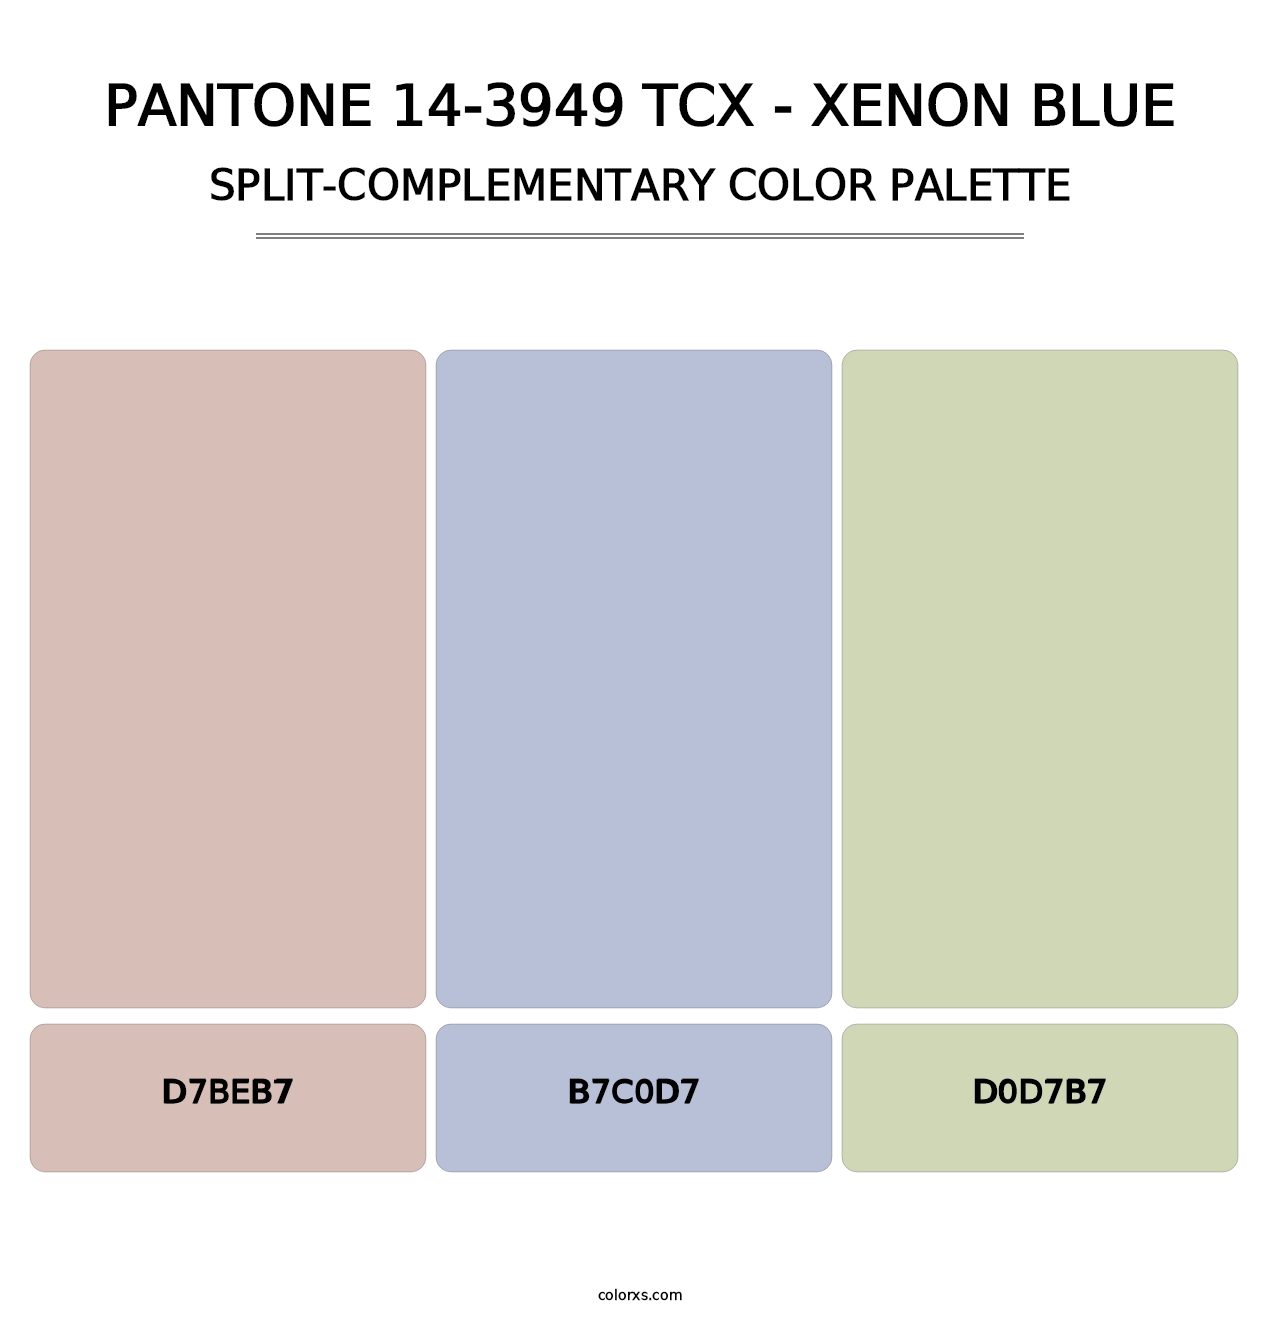 PANTONE 14-3949 TCX - Xenon Blue - Split-Complementary Color Palette